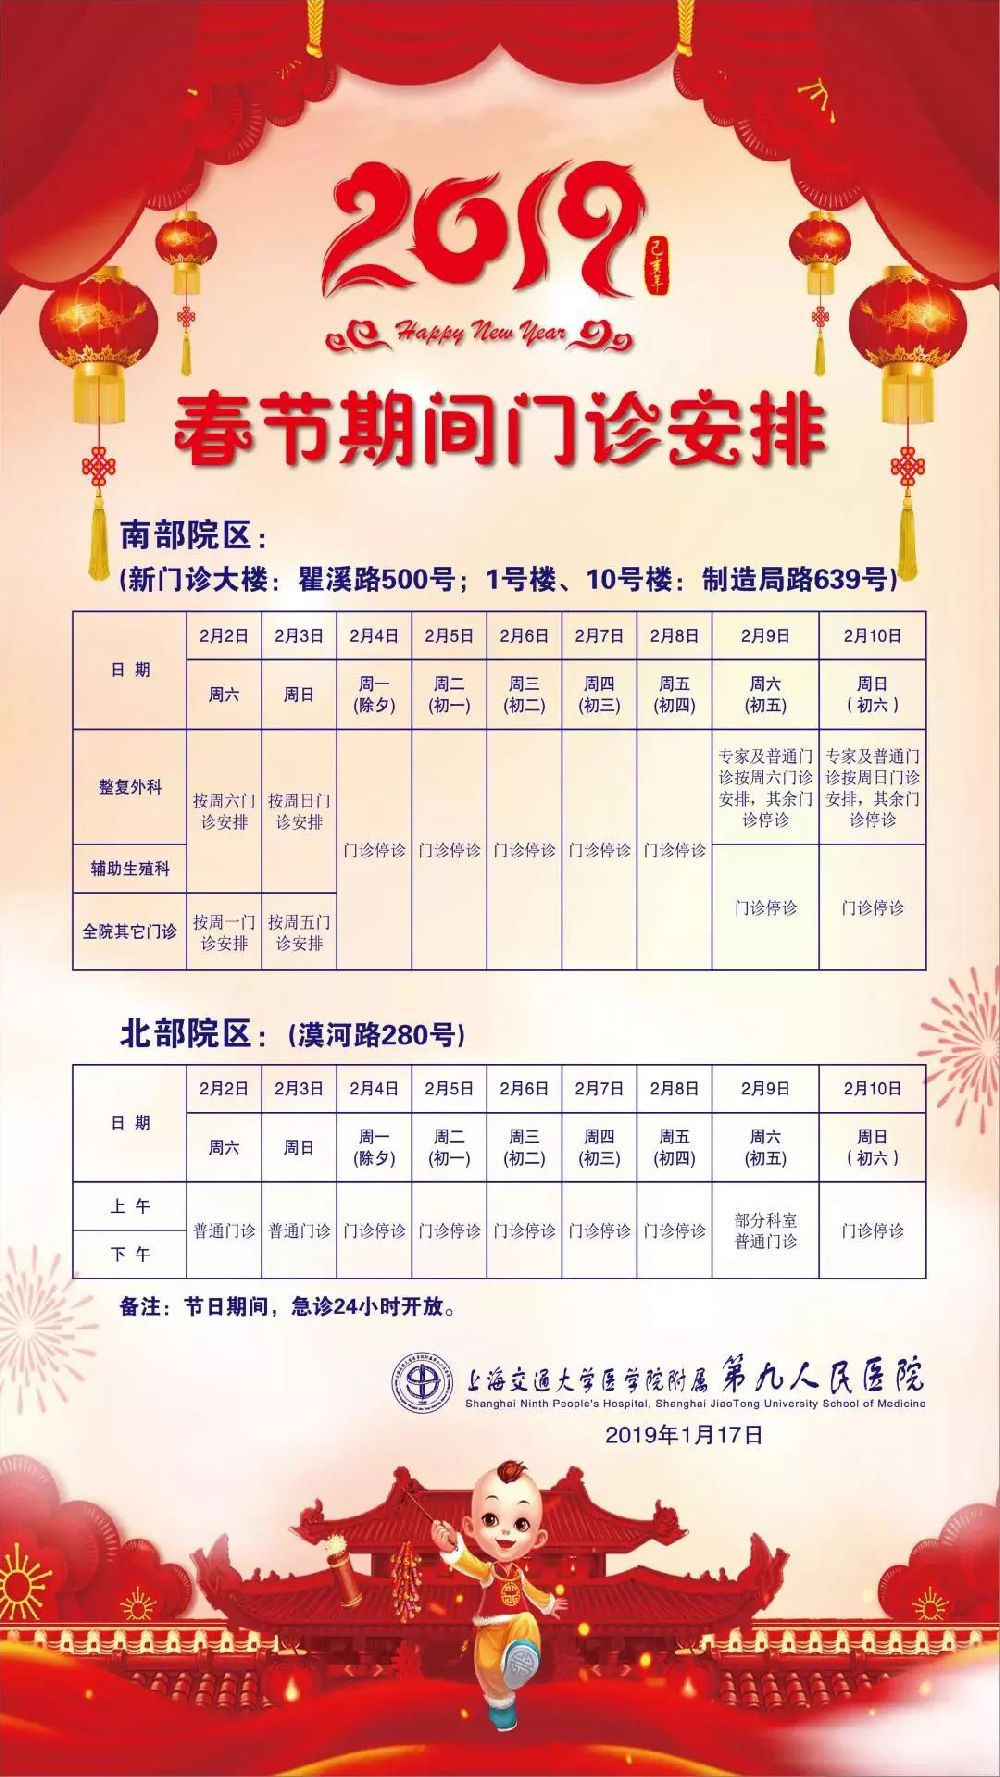 2019春节上海49家三级医院门急诊放假安排一览